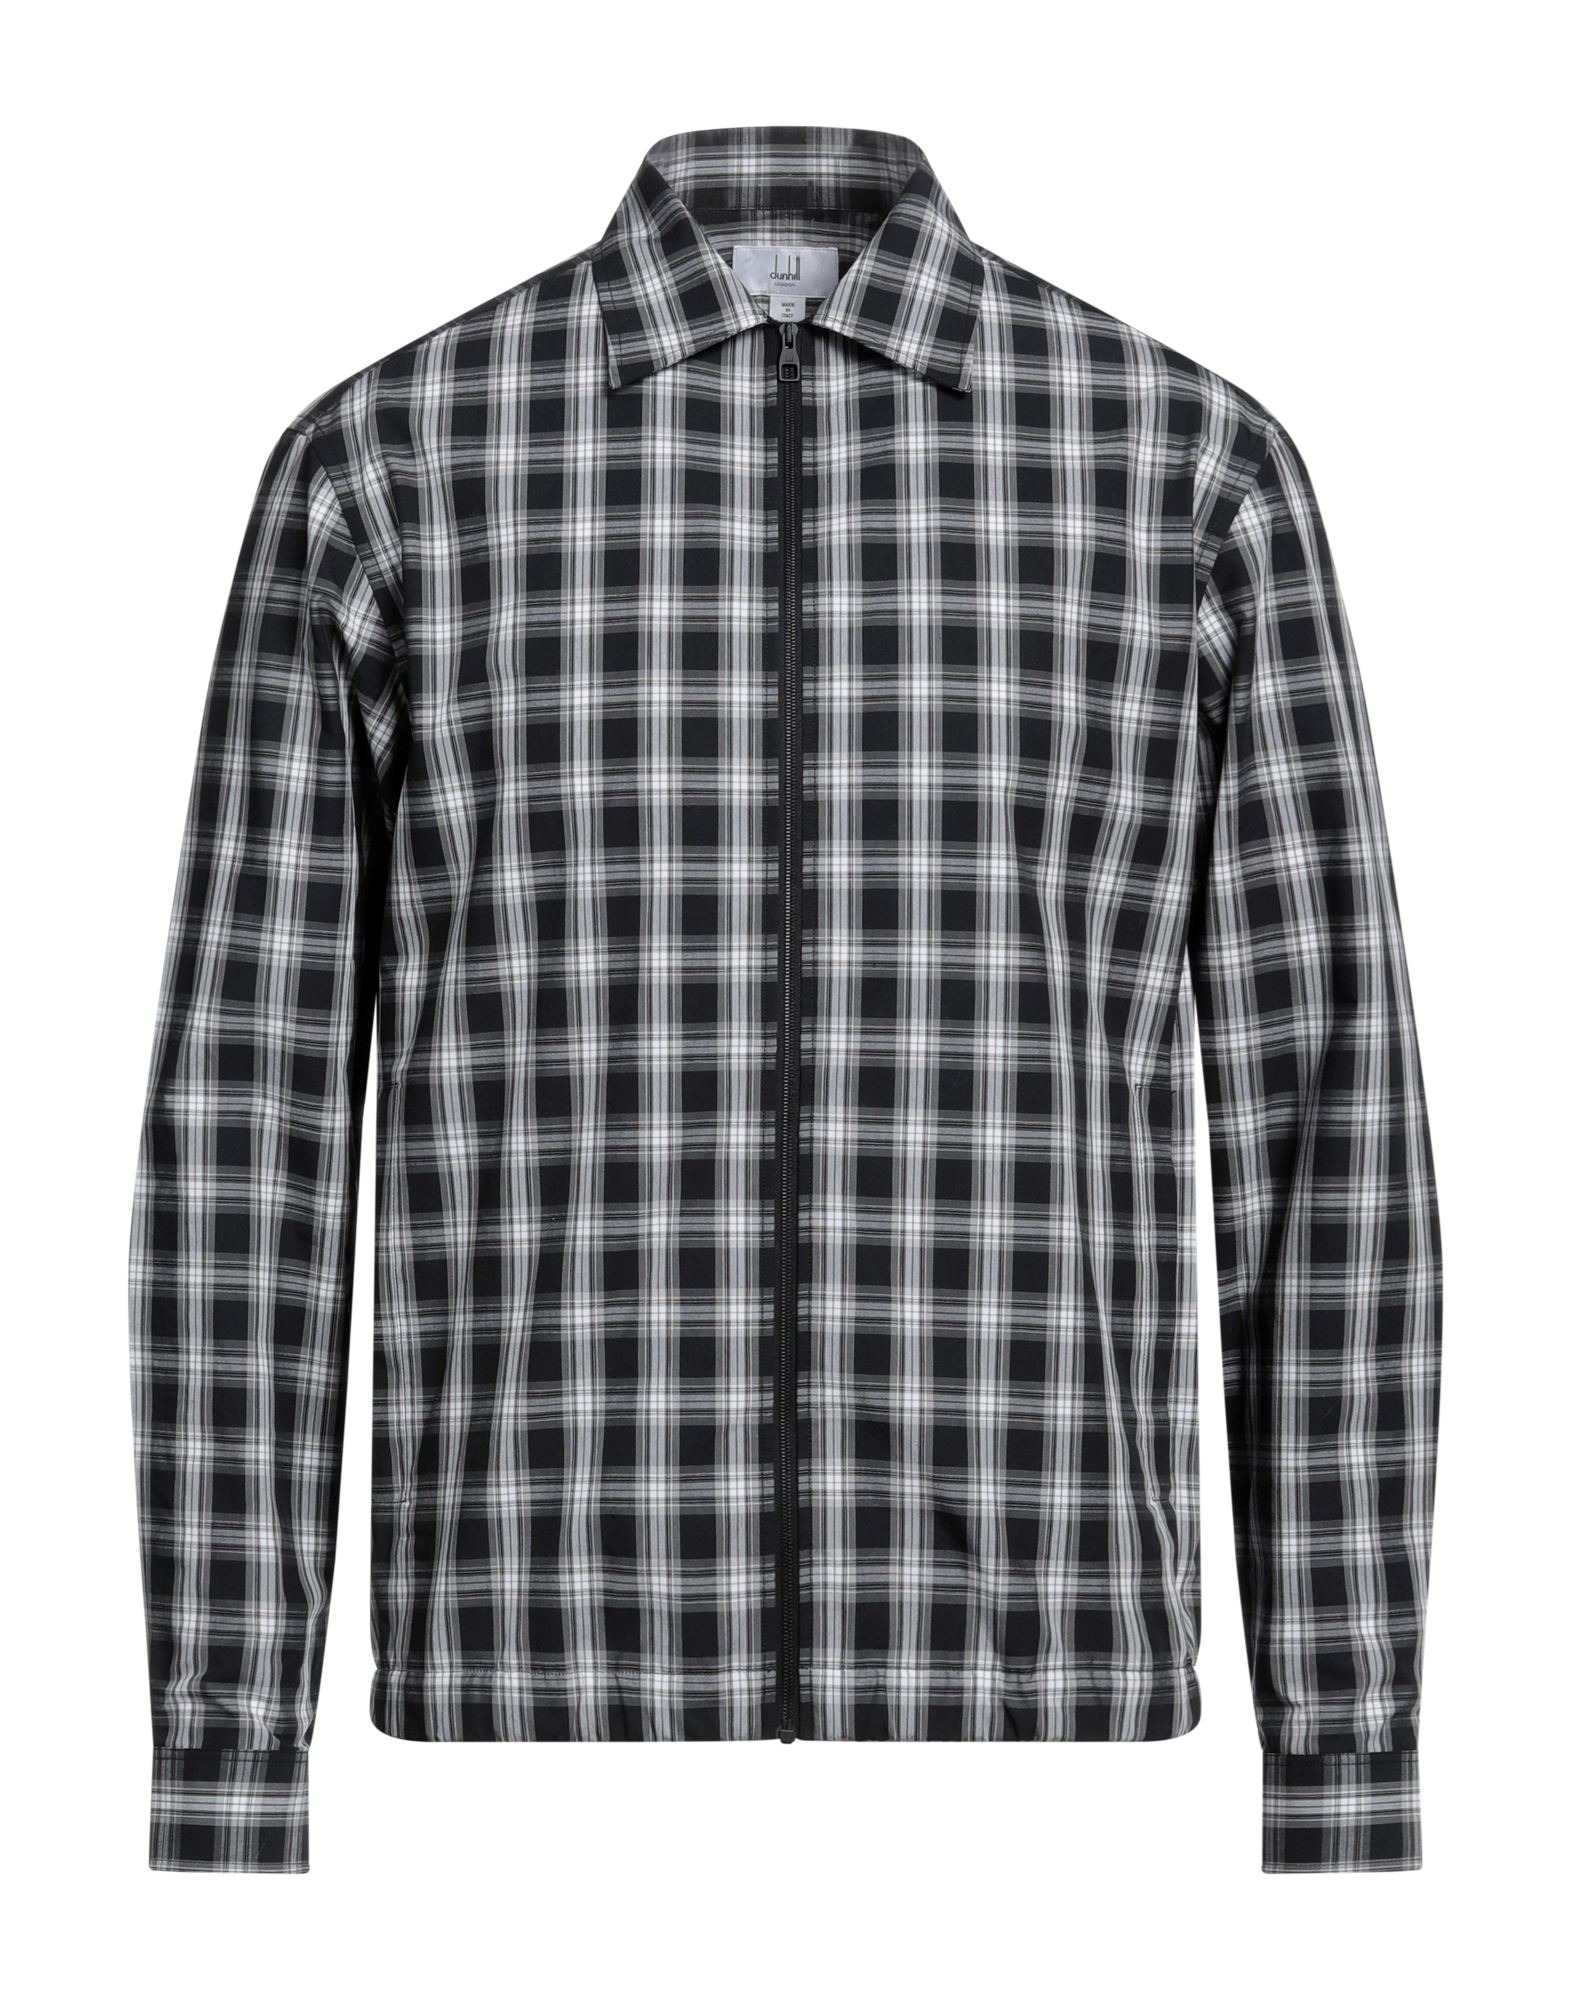 ダンヒル(dunhill) メンズシャツ・ワイシャツ | 通販・人気ランキング